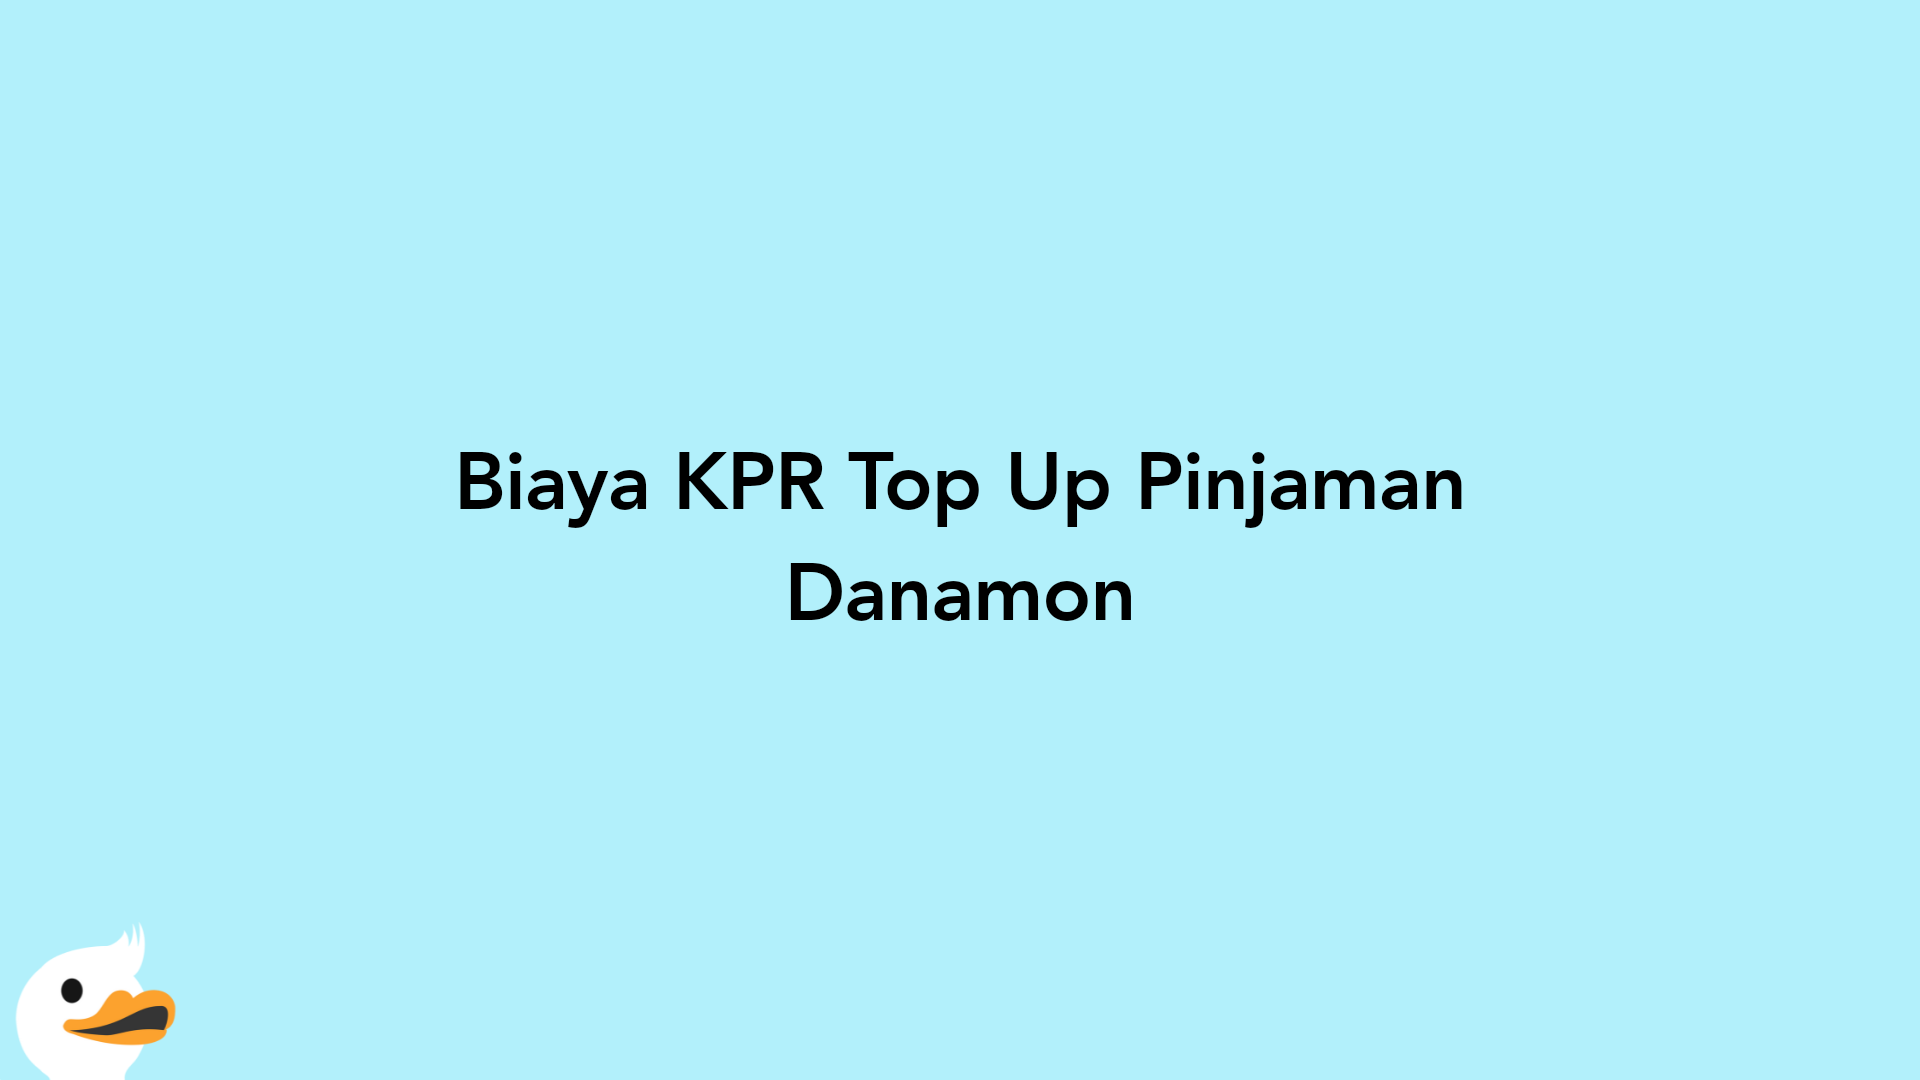 Biaya KPR Top Up Pinjaman Danamon